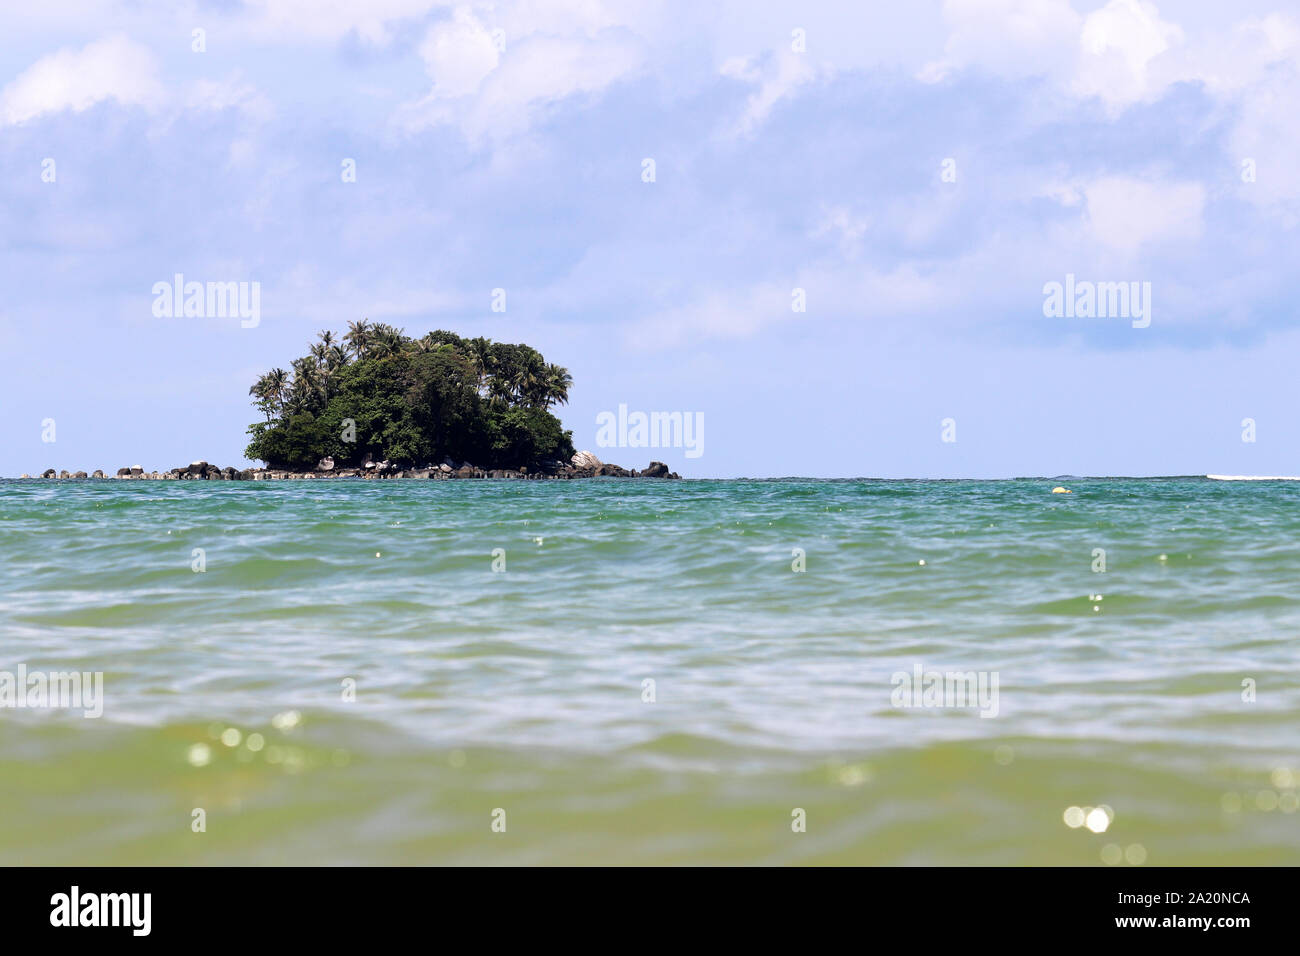 Île tropicale avec palmiers dans un océan, vue pittoresque de l'eau calme, selective focus. Seascape colorés avec ciel bleu et nuages blancs Banque D'Images